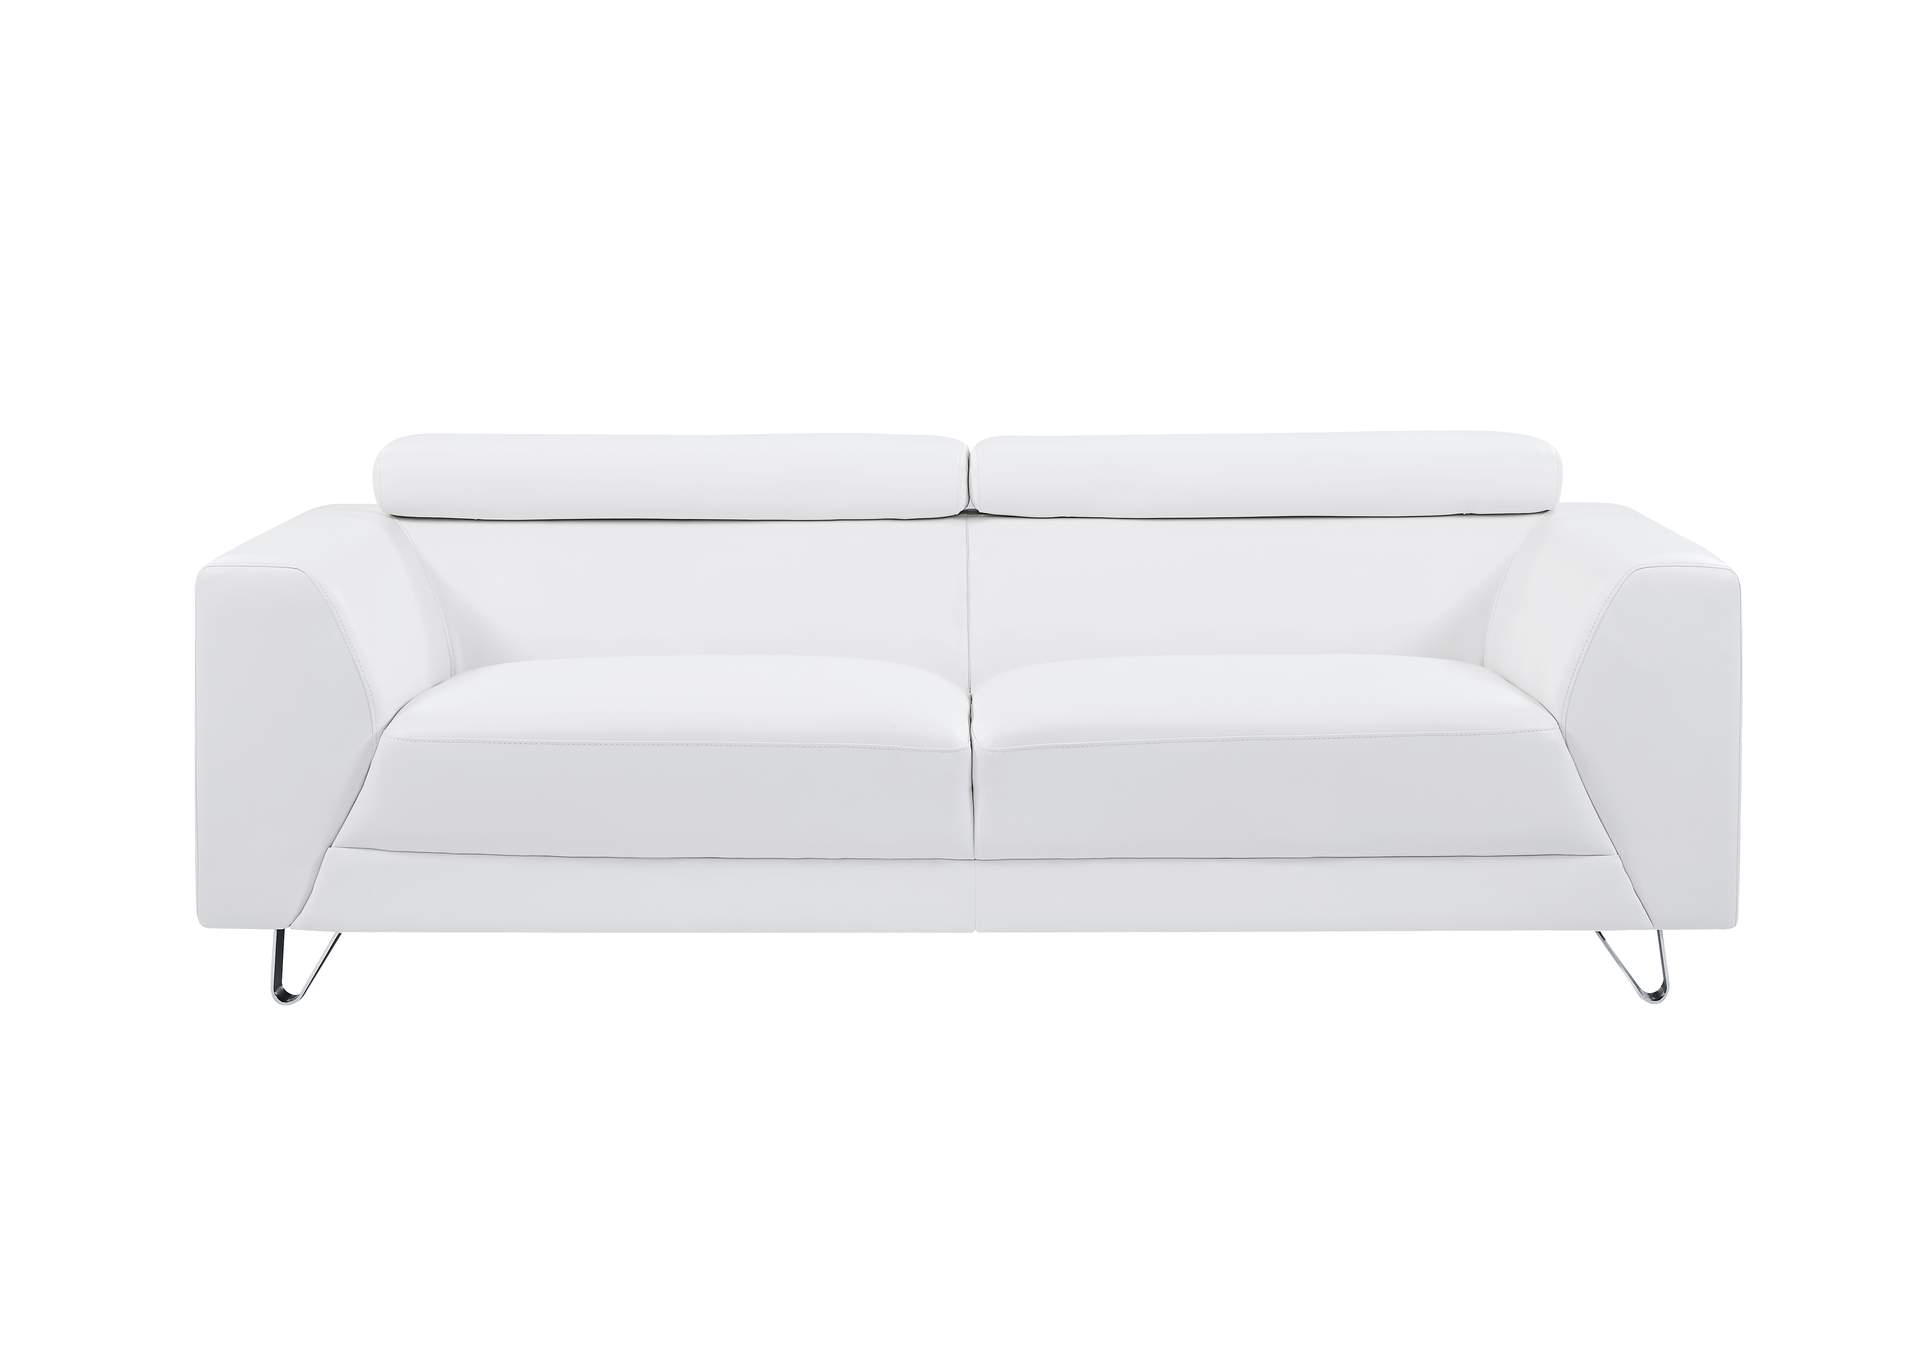 White Pluto Sofa,Global Furniture USA